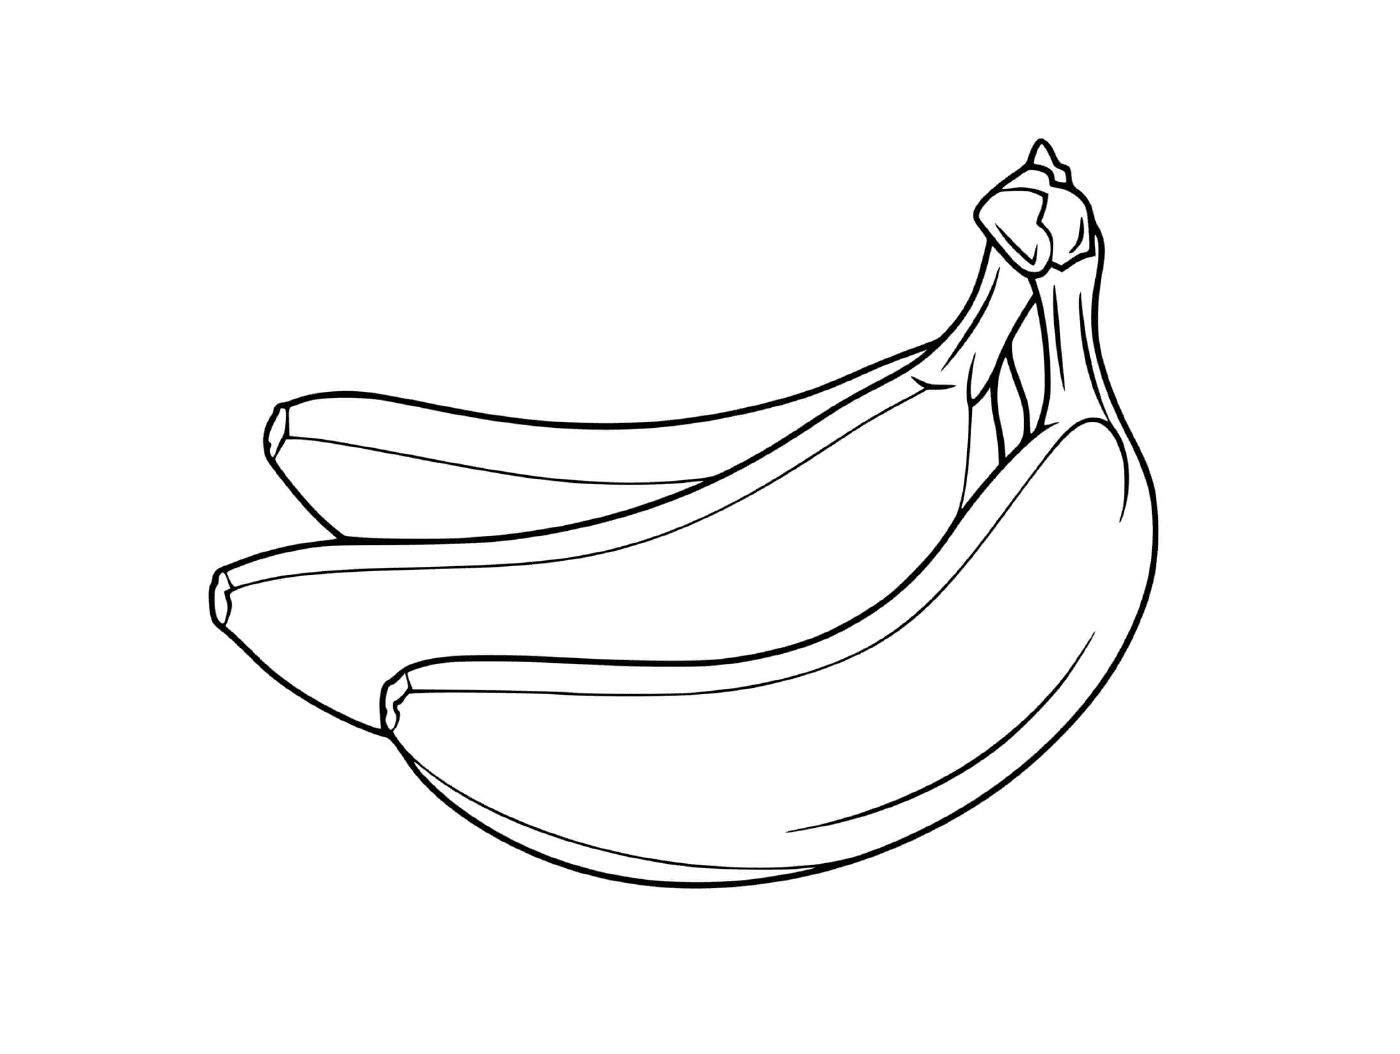  Dos plátanos sobre fondo blanco 